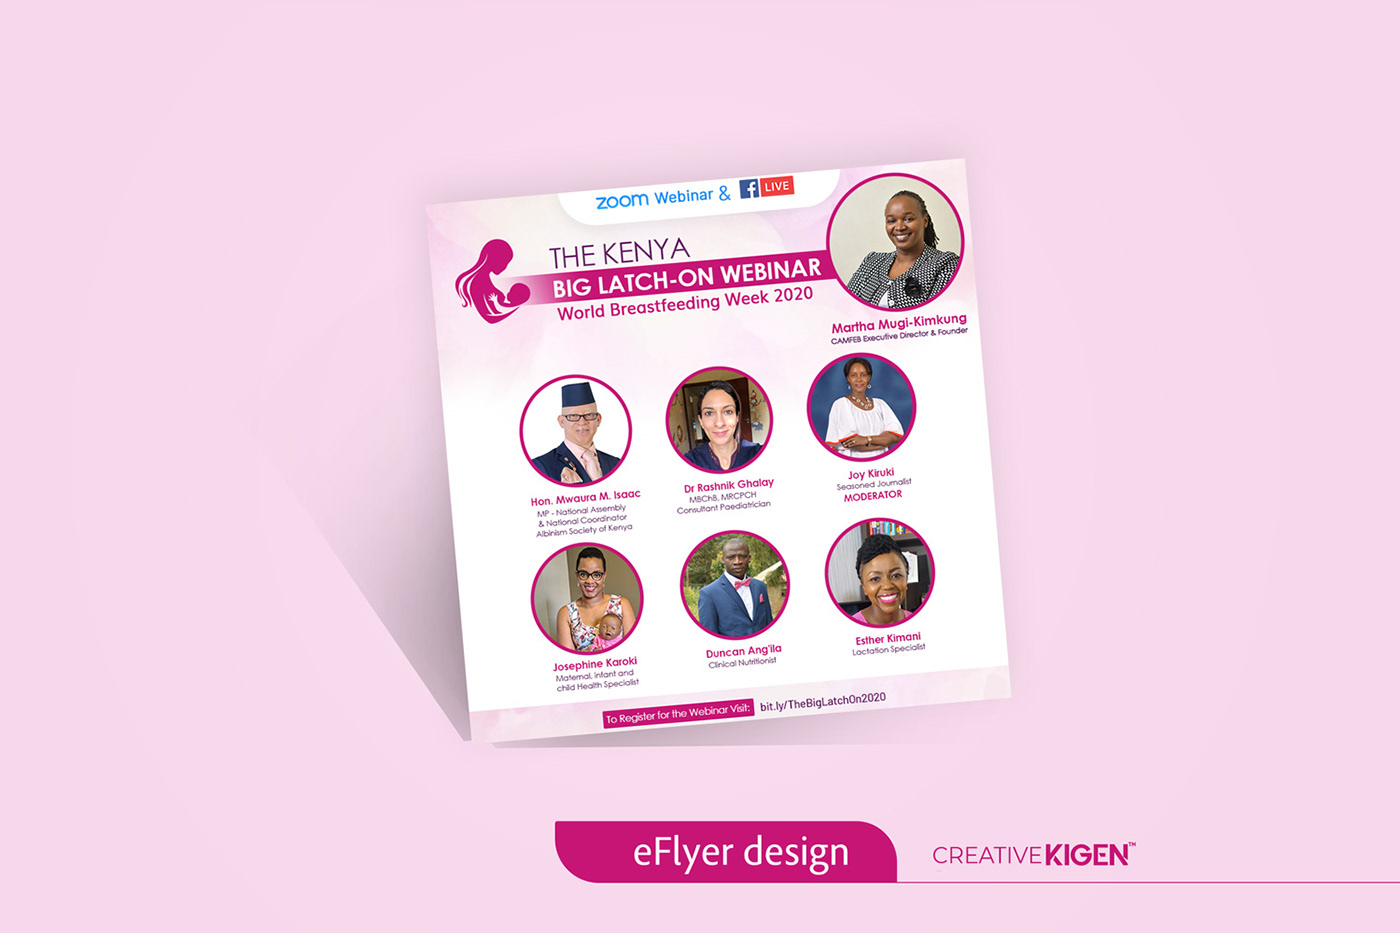 eFlyer Design in kenya flyer design in kenya